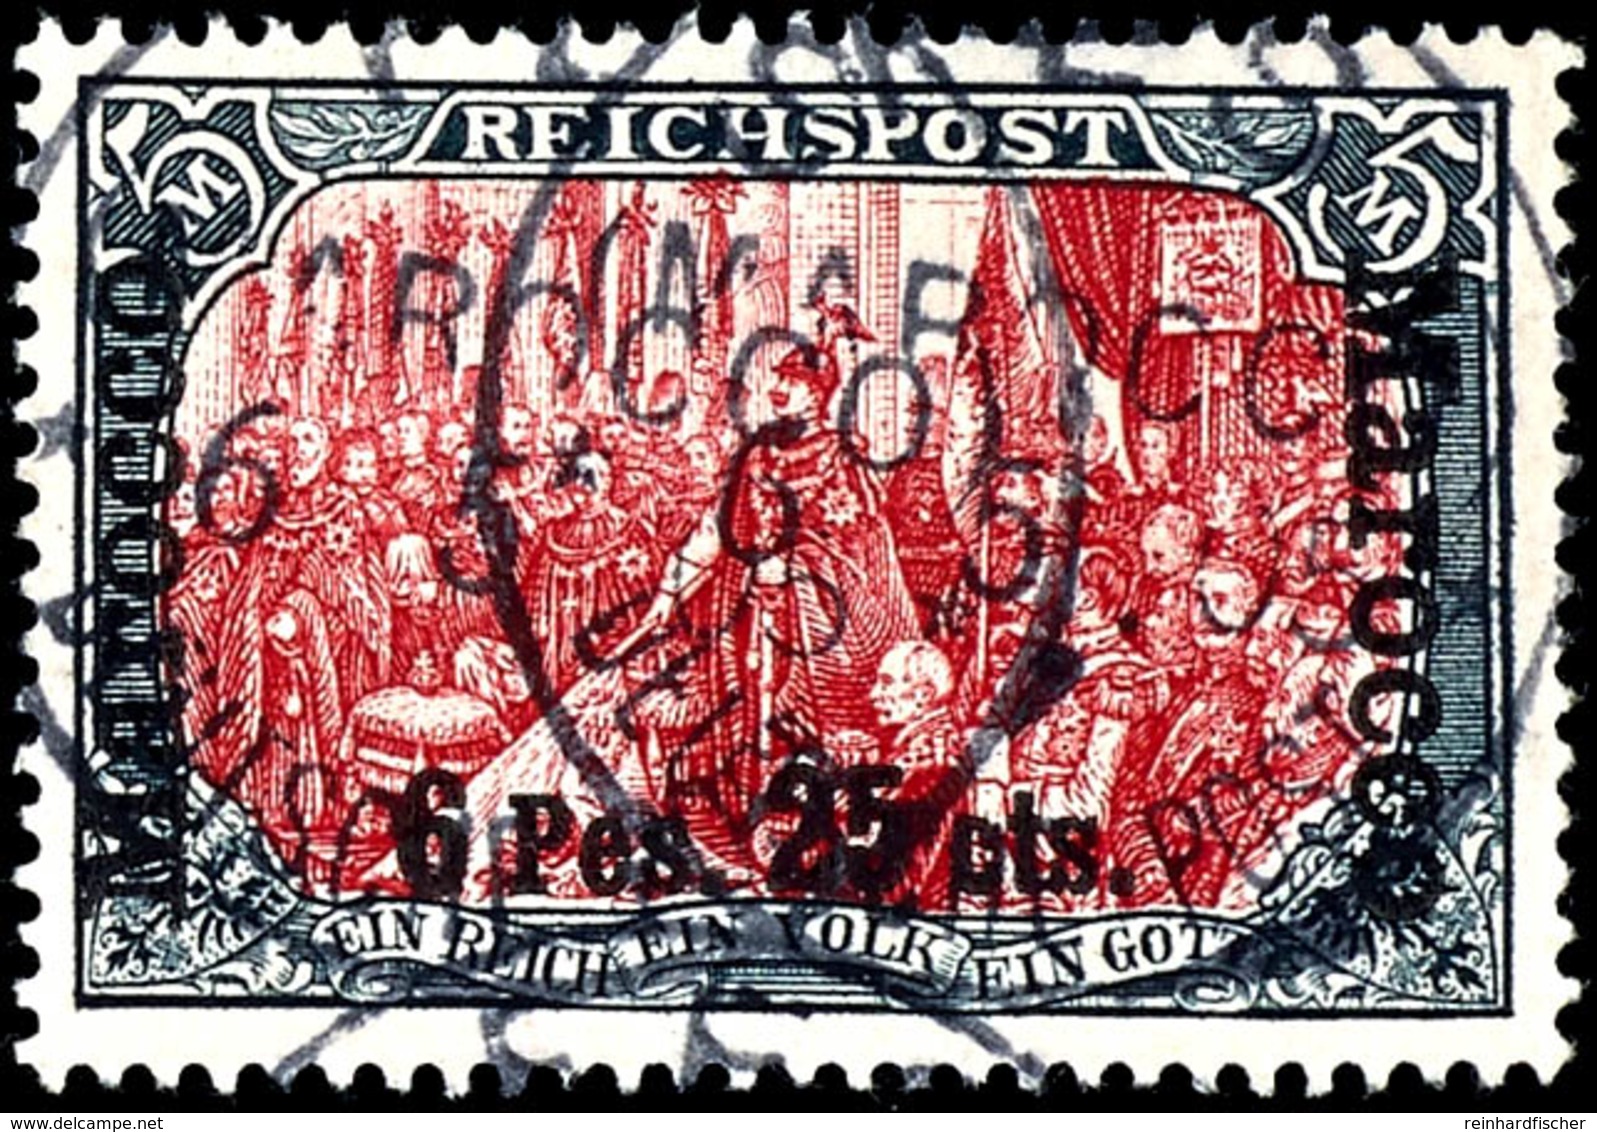 5 Mark Reichspost Mit Aufdruck "Marocco 6 Pes. 25 Cts." In Type II, Tadellose Marke, Gestempelt "FES", Michel  340,-, Ka - Deutsche Post In Marokko